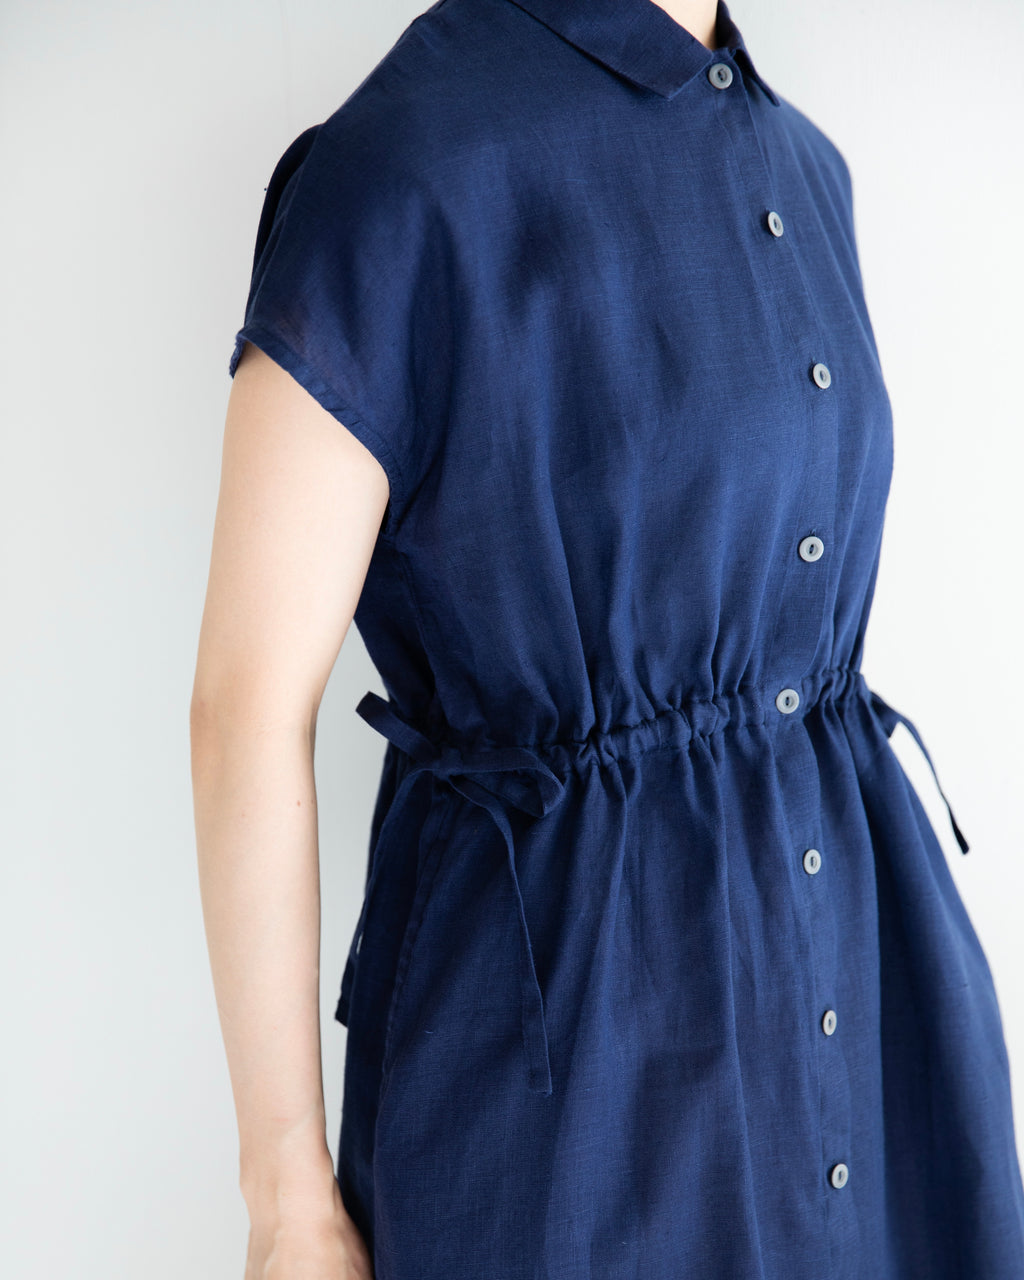 Kaho Dress: Indigo Blue